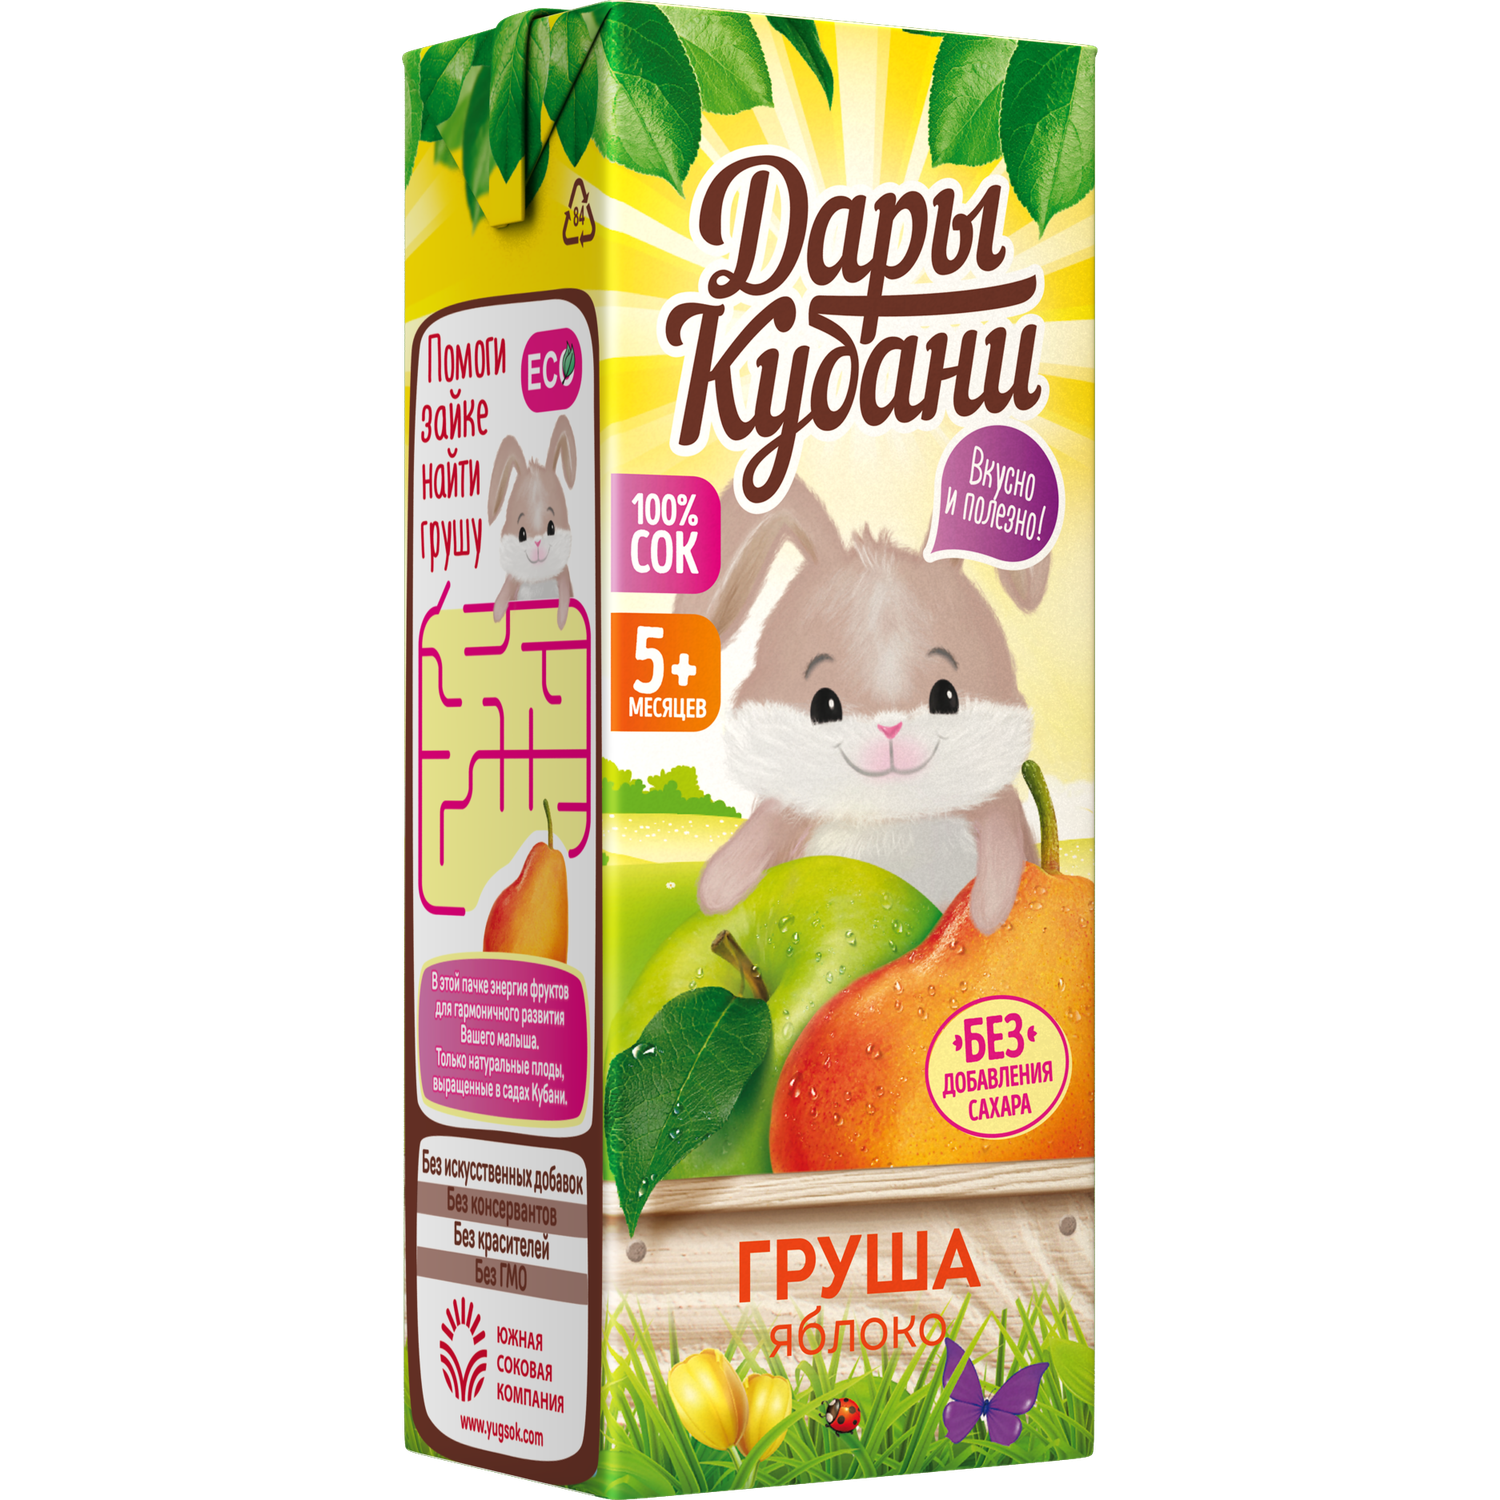 Сок детский Дары Кубани яблоко-груша без сахара осветленный 15 шт по 200 мл - фото 5